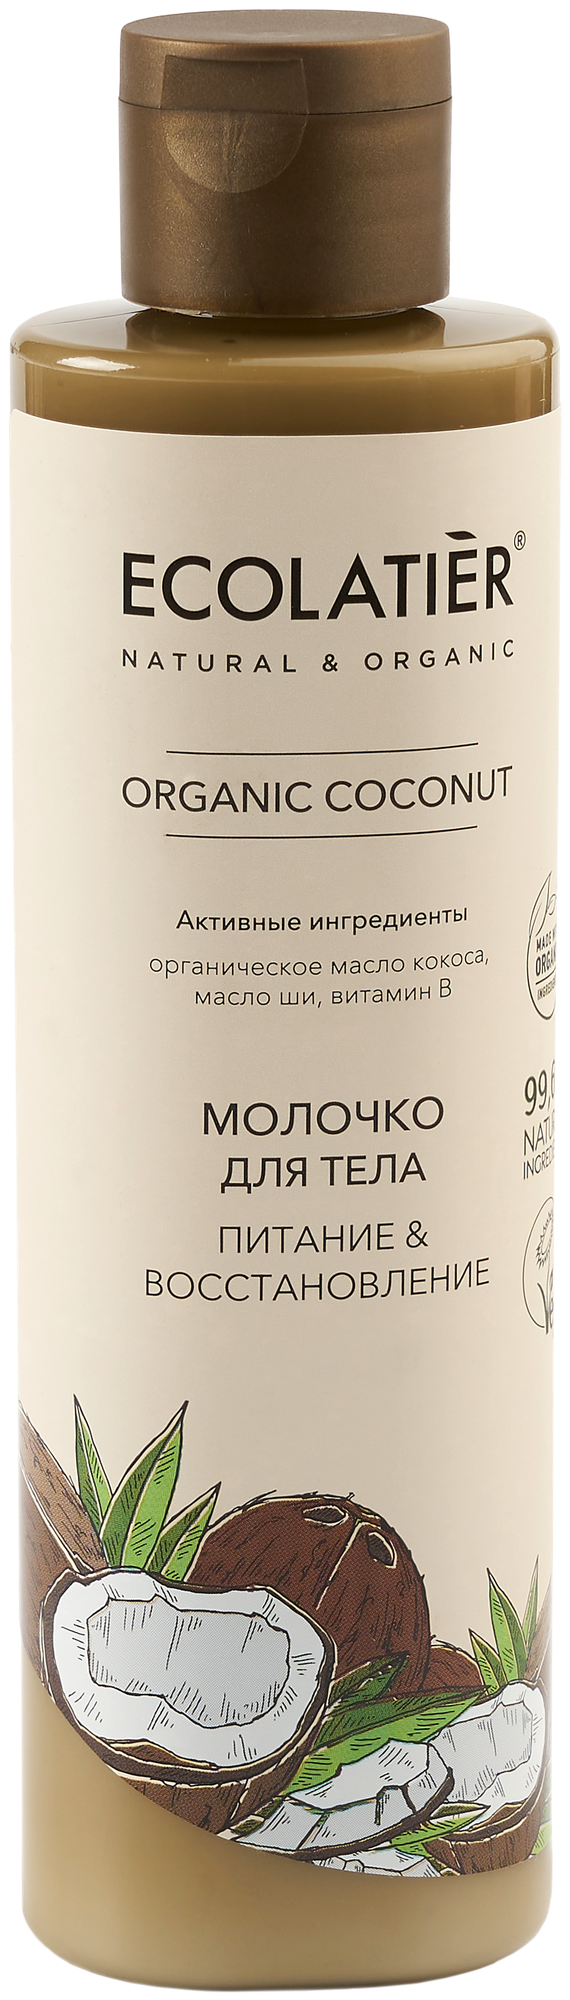 Ecolatier GREEN Молочко для тела Питание & Восстановление Серия ORGANIC COCONUT 250 мл